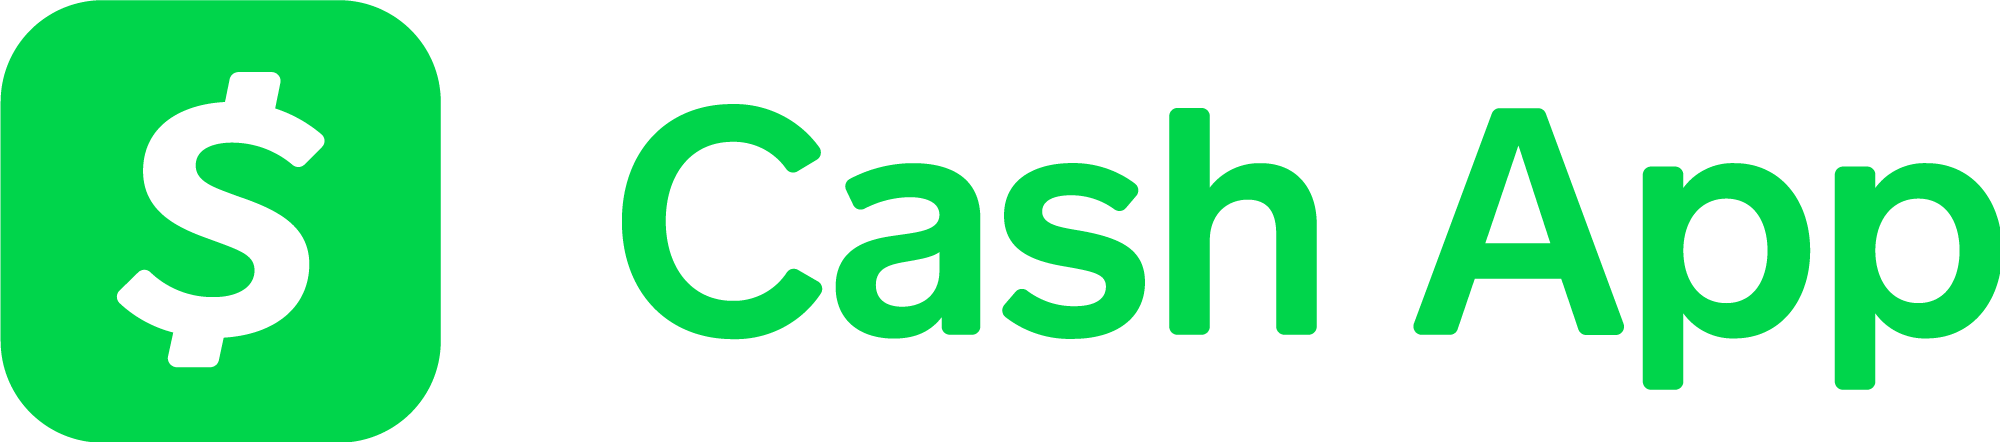 cash app logo png